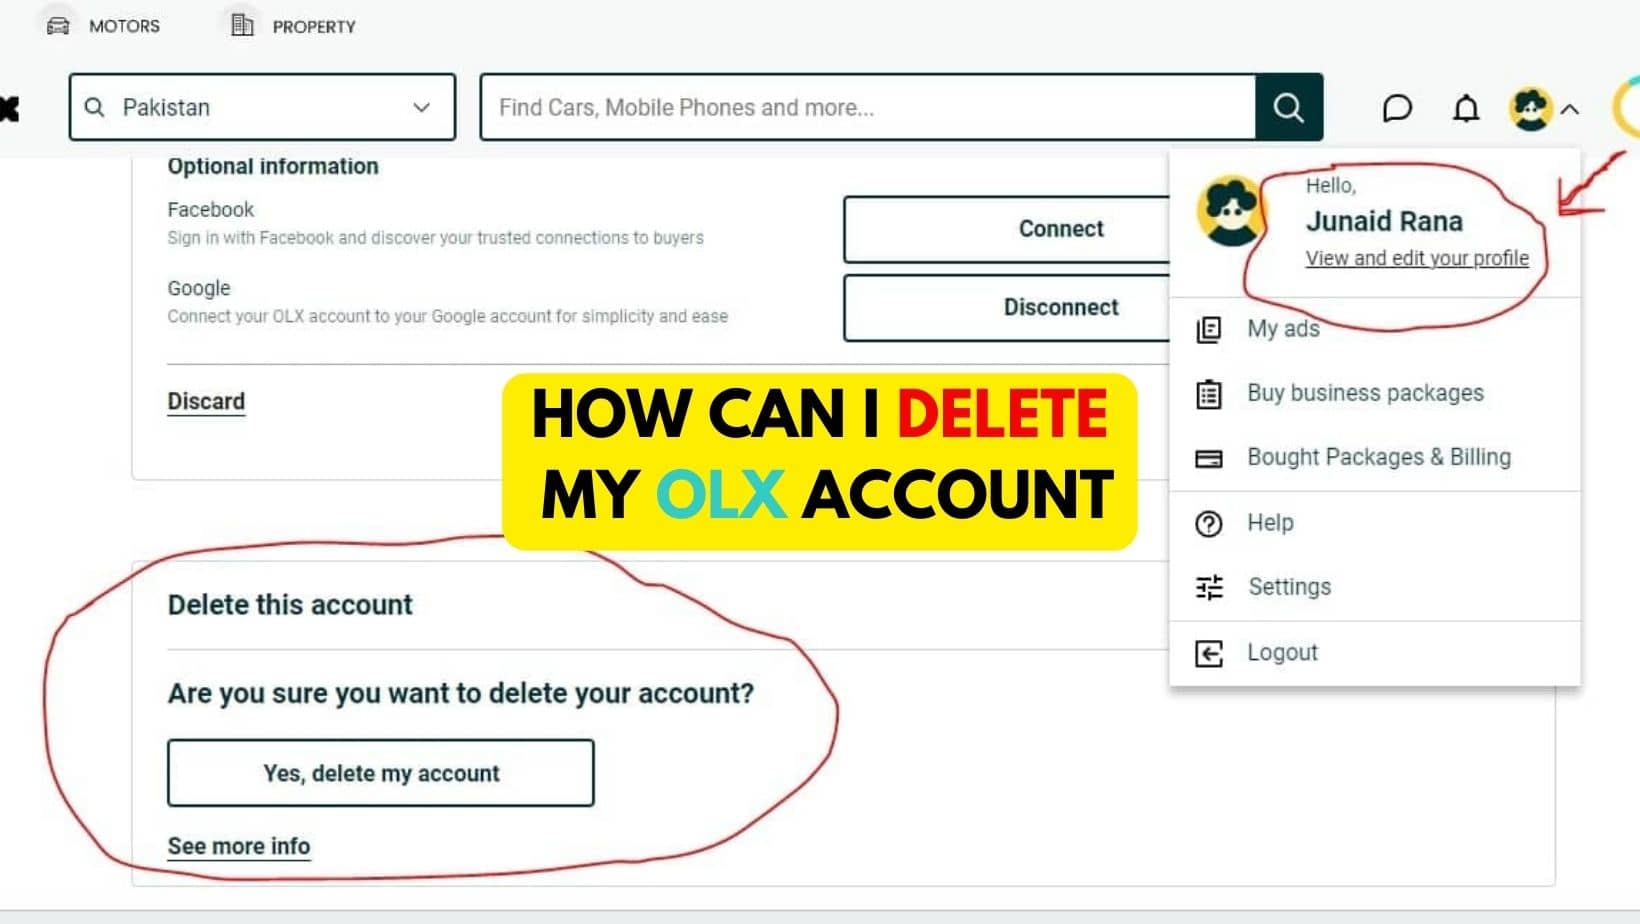 How to delete my OLX account? - AccountDeleters